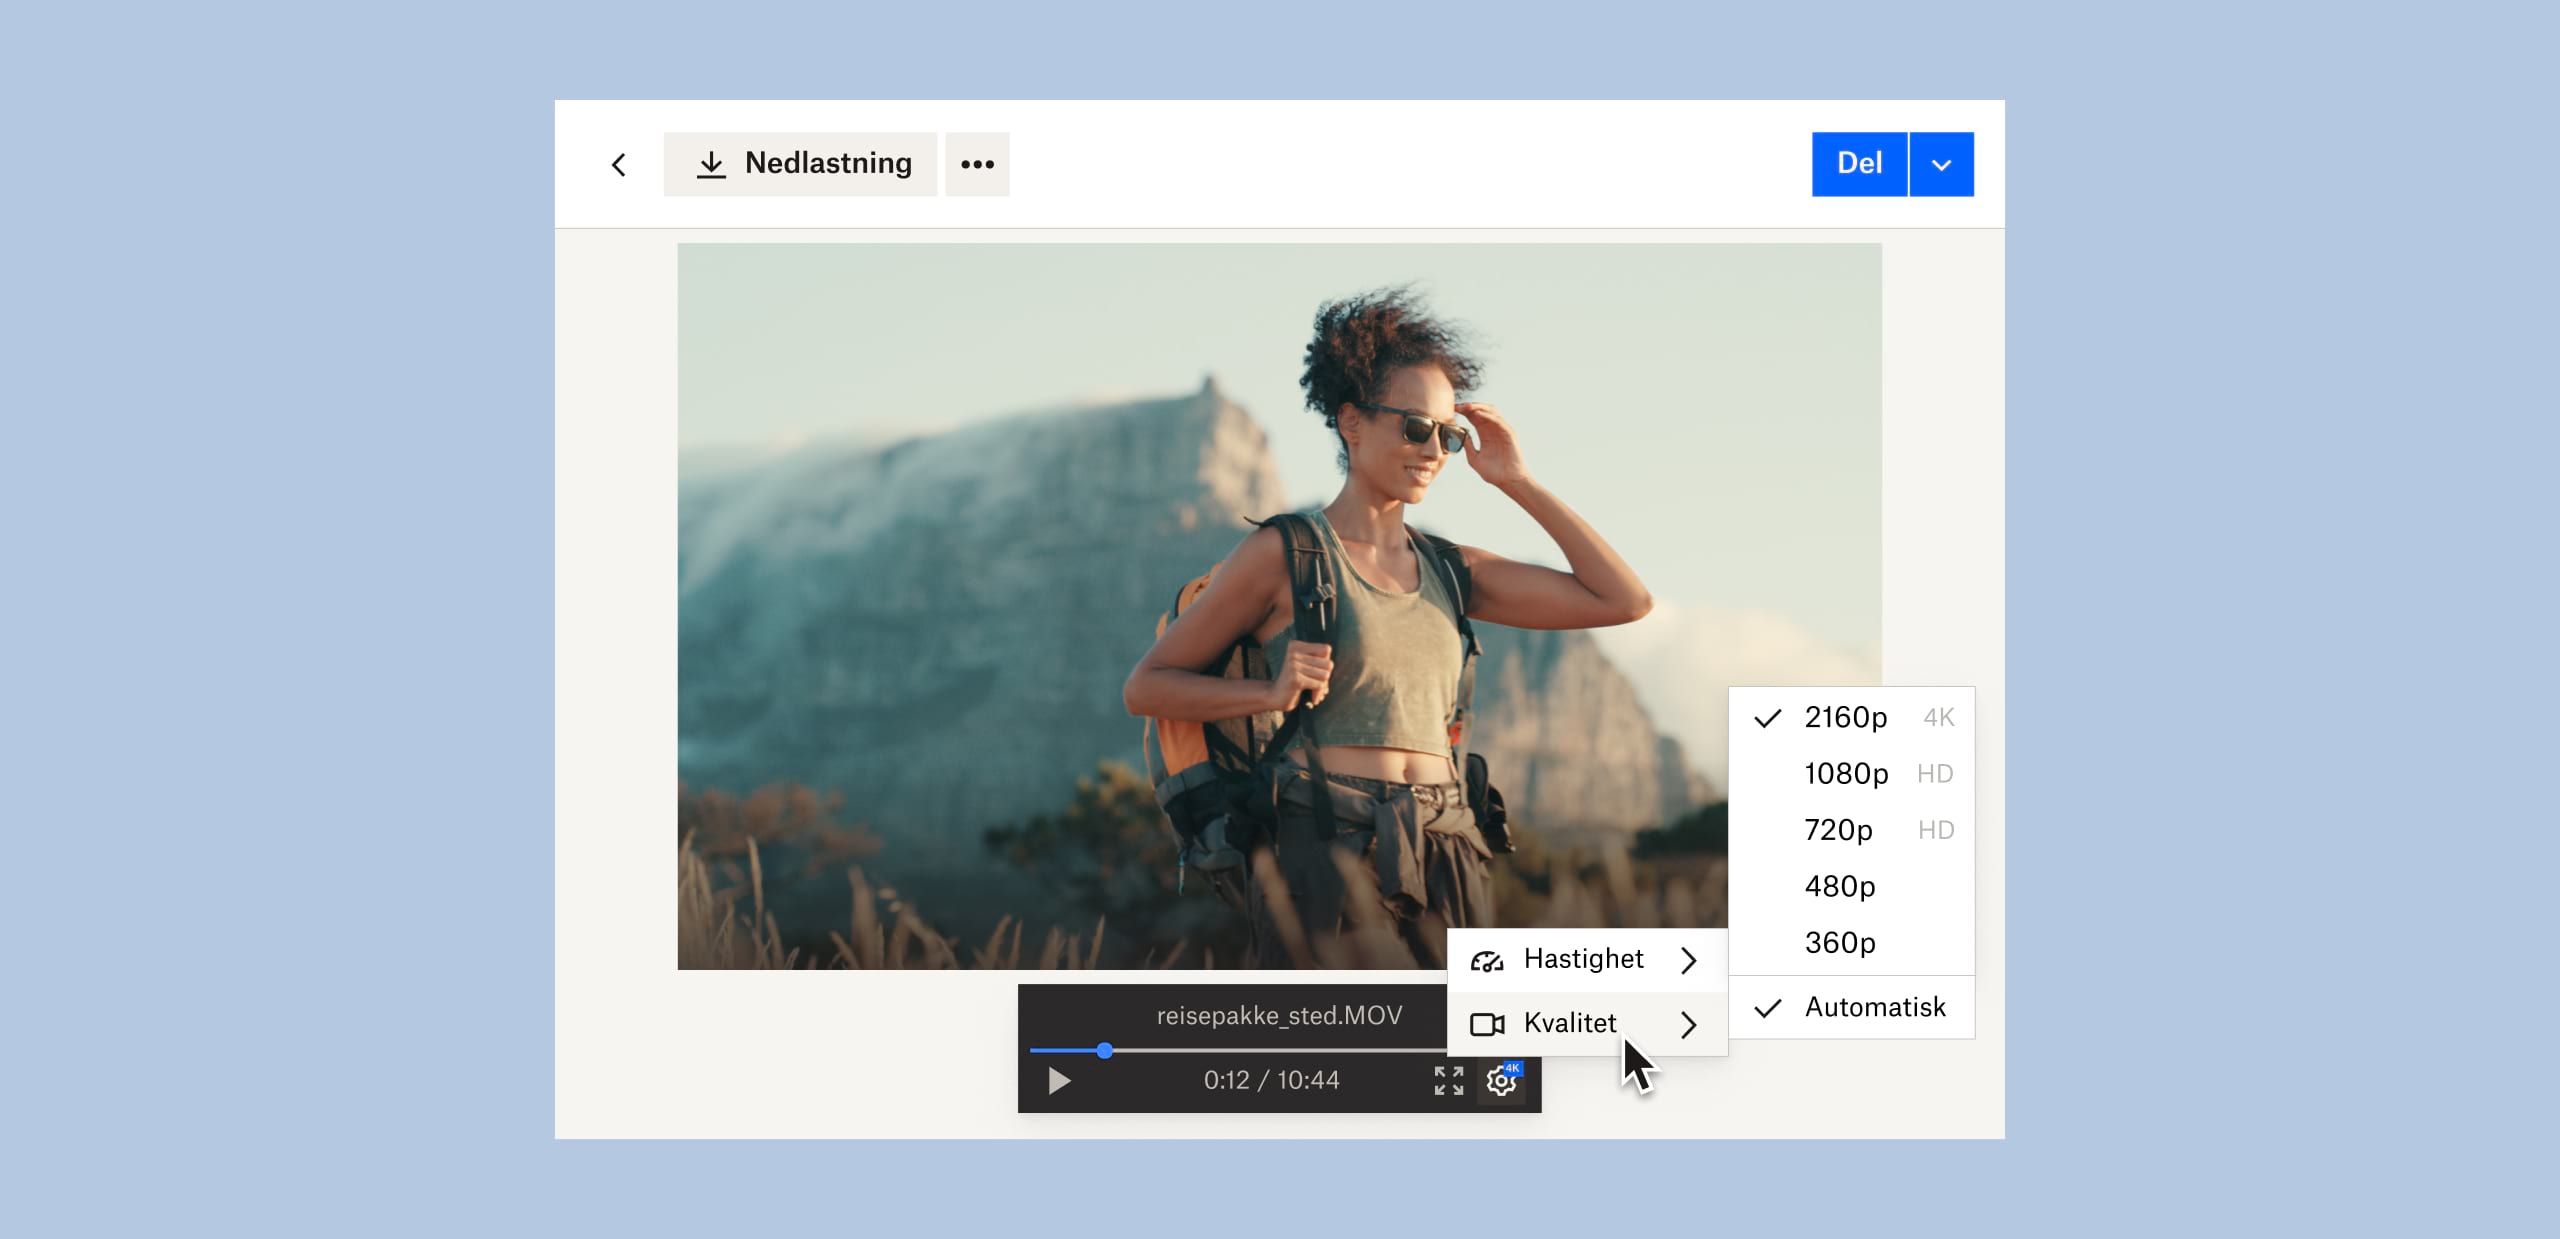 En bruker endrer bildekvaliteten i en videofil som er lagret i Dropbox